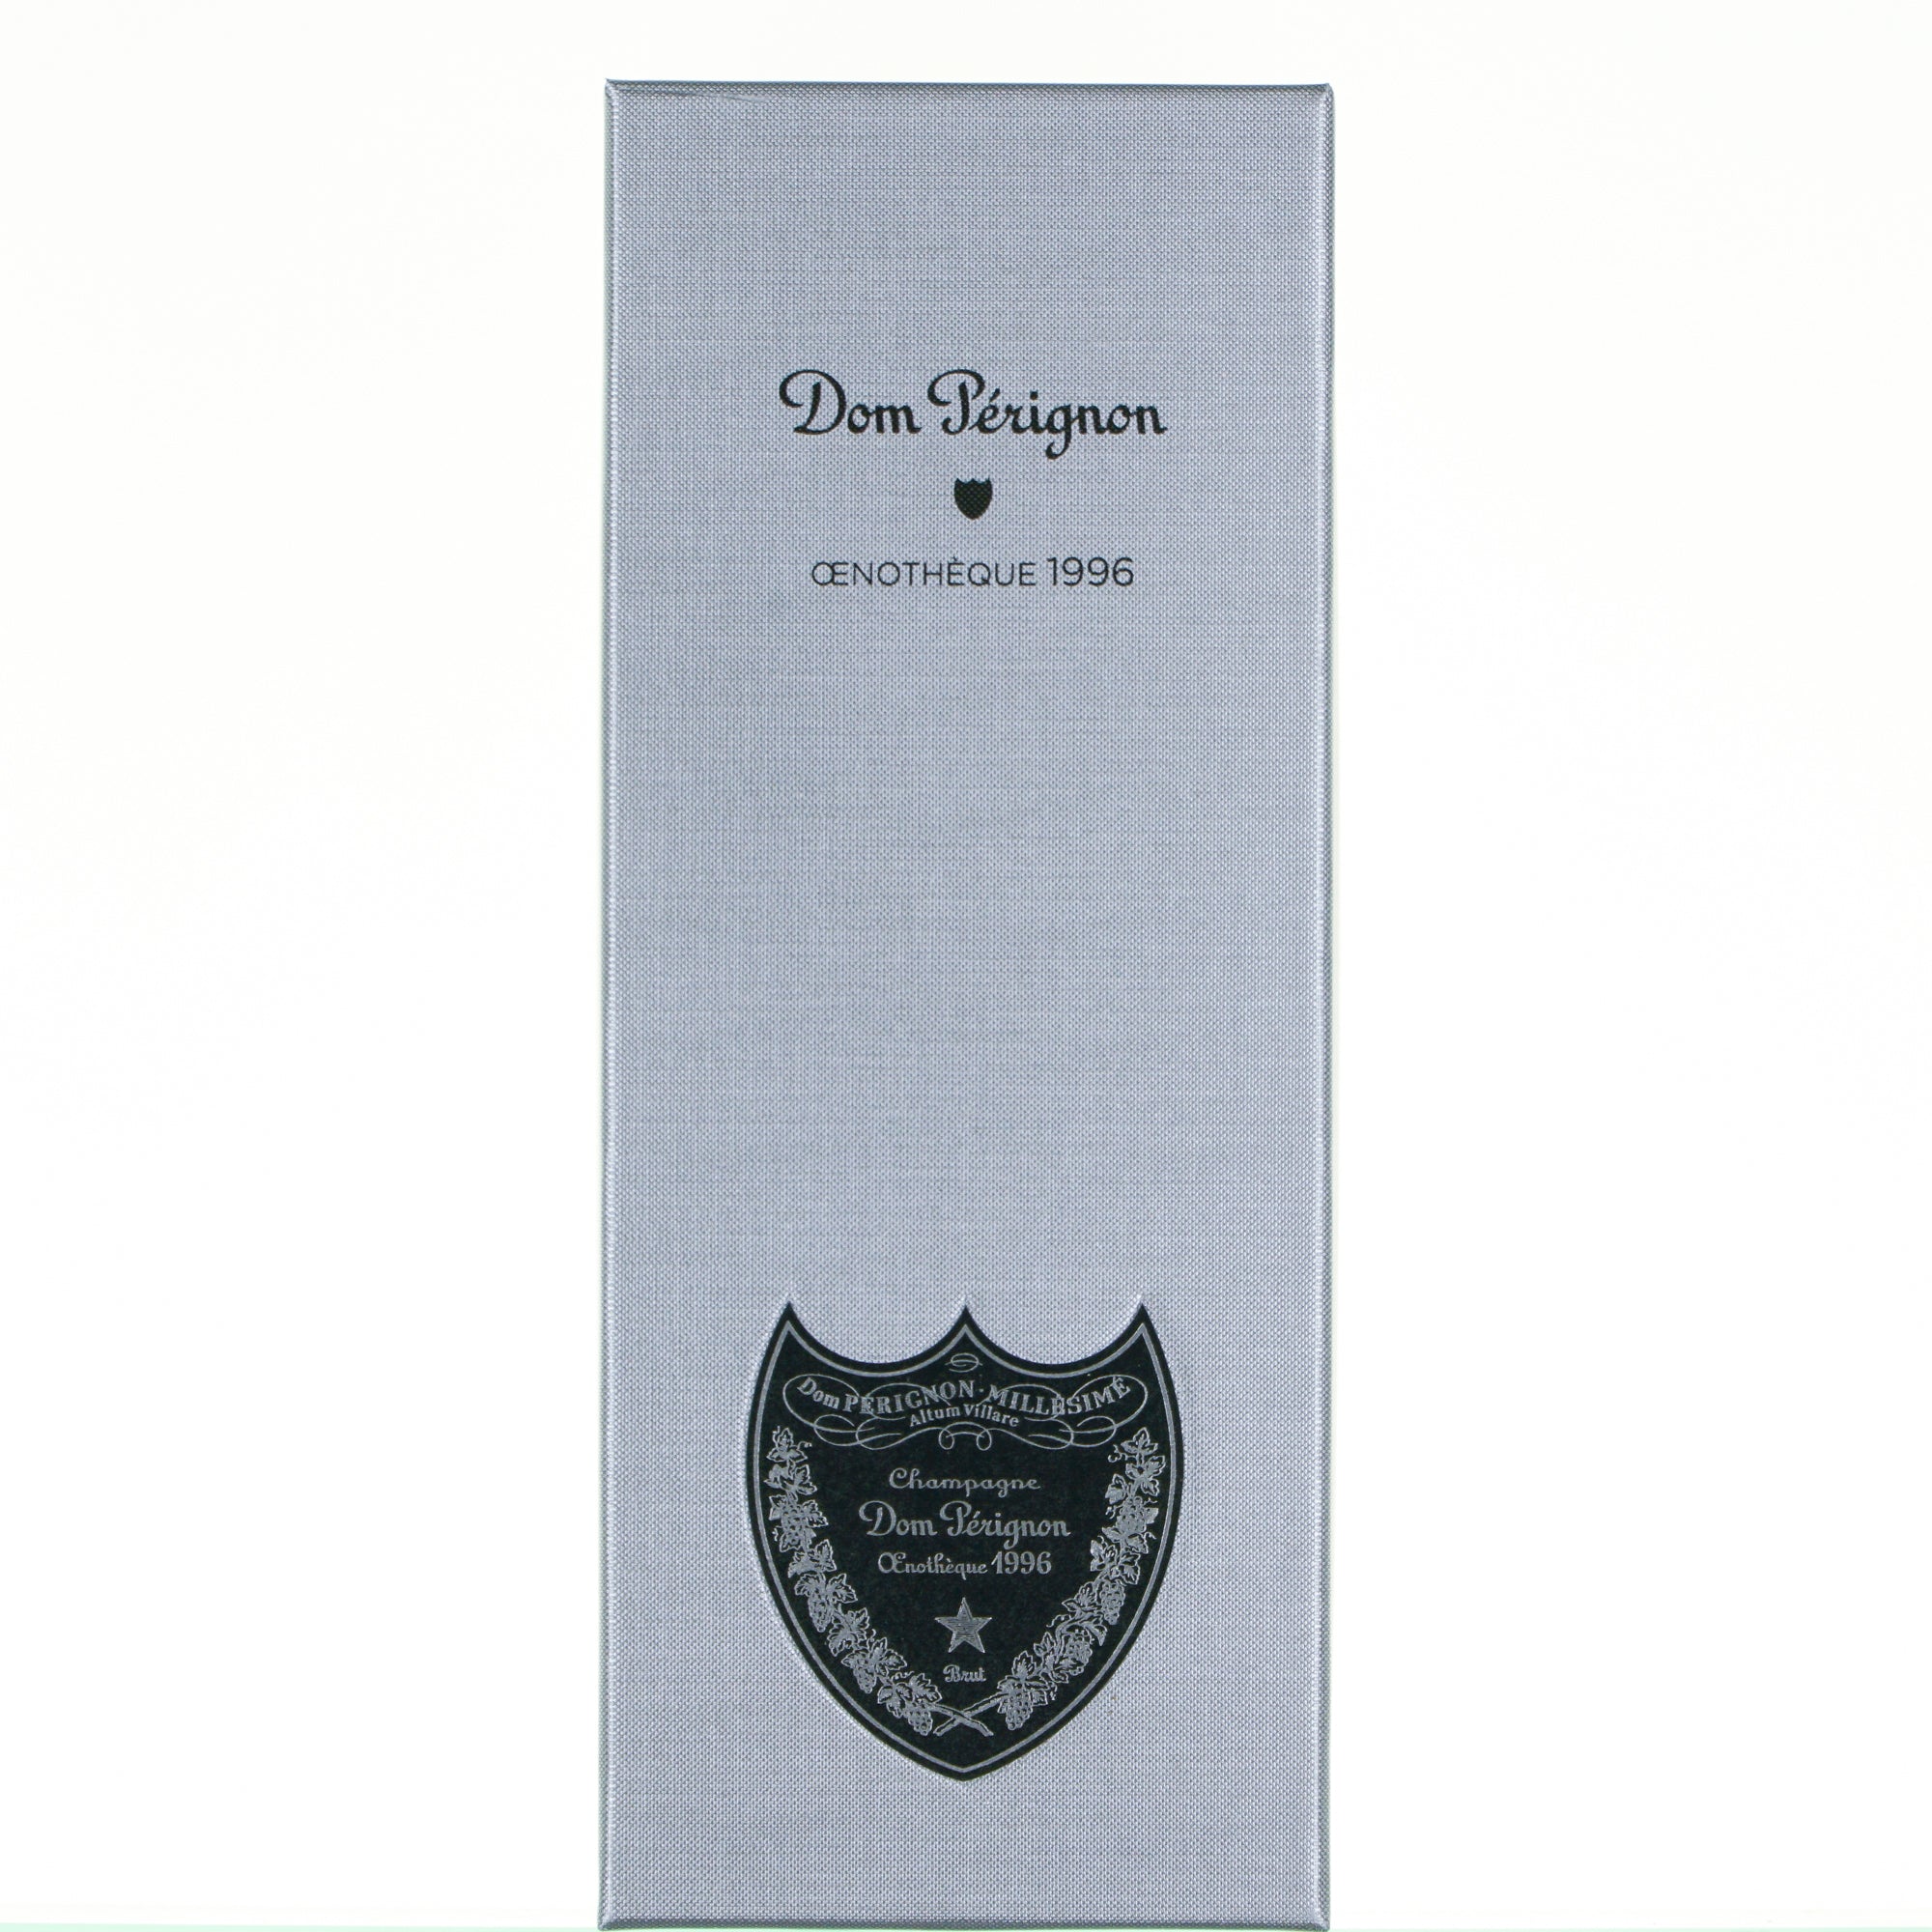 Champagne Dom Perignon 1996 Enotheque Moet&Chandon lt.0,750